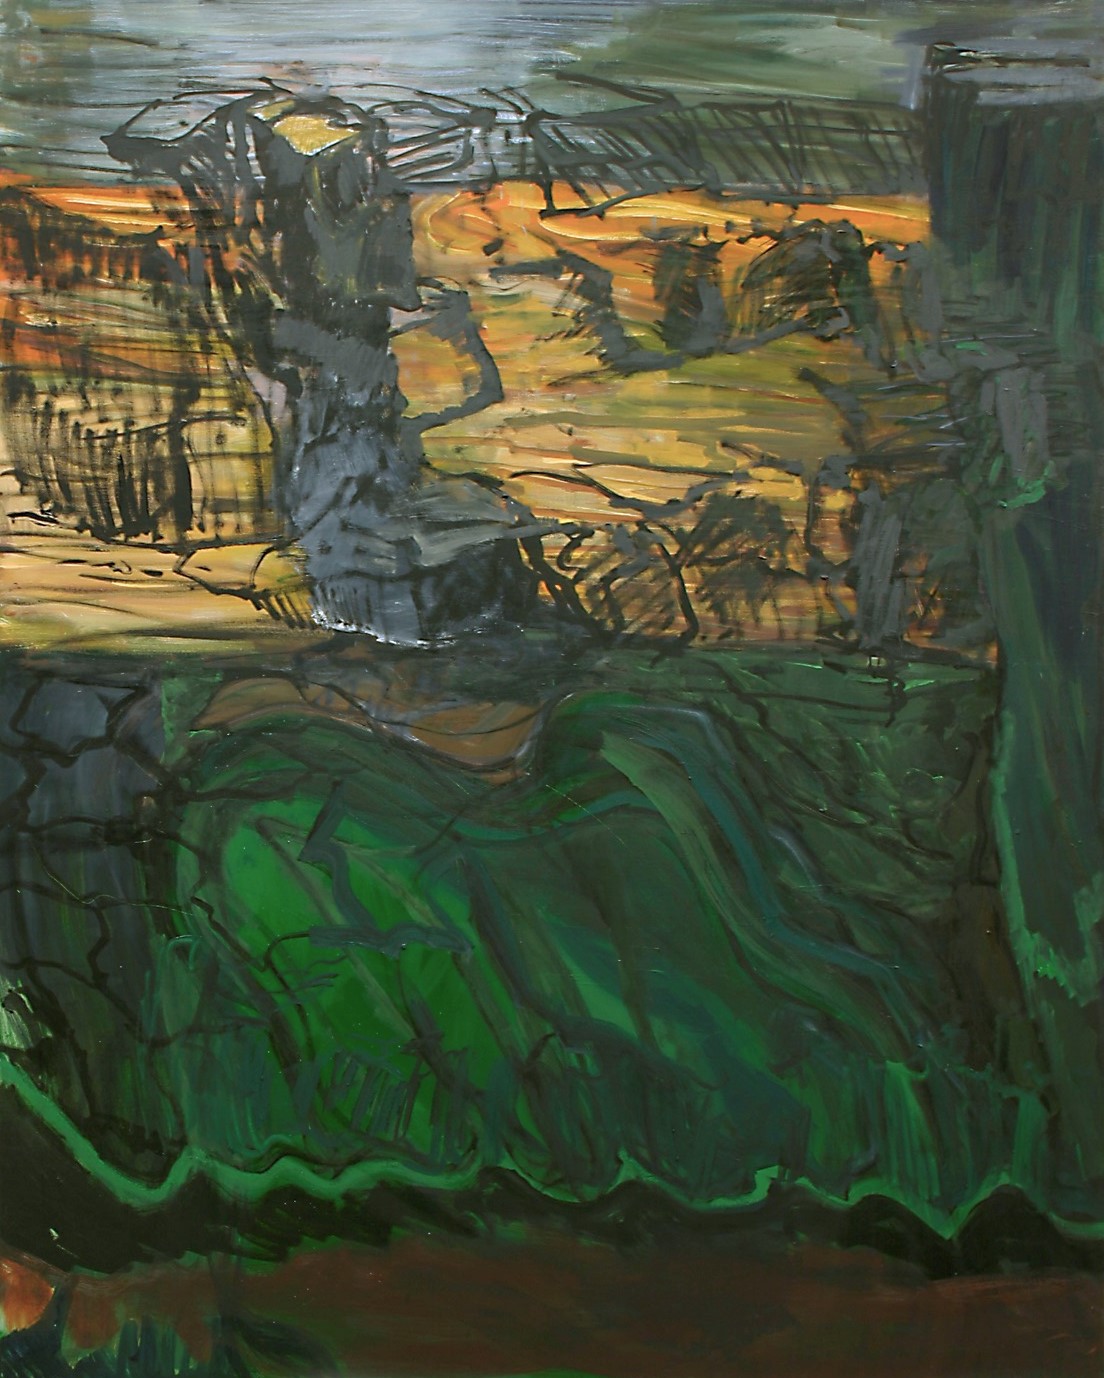 Per Kirkeby, Verschiebung - Stillen, 2003, oil on canvas, 200 x 160 cm